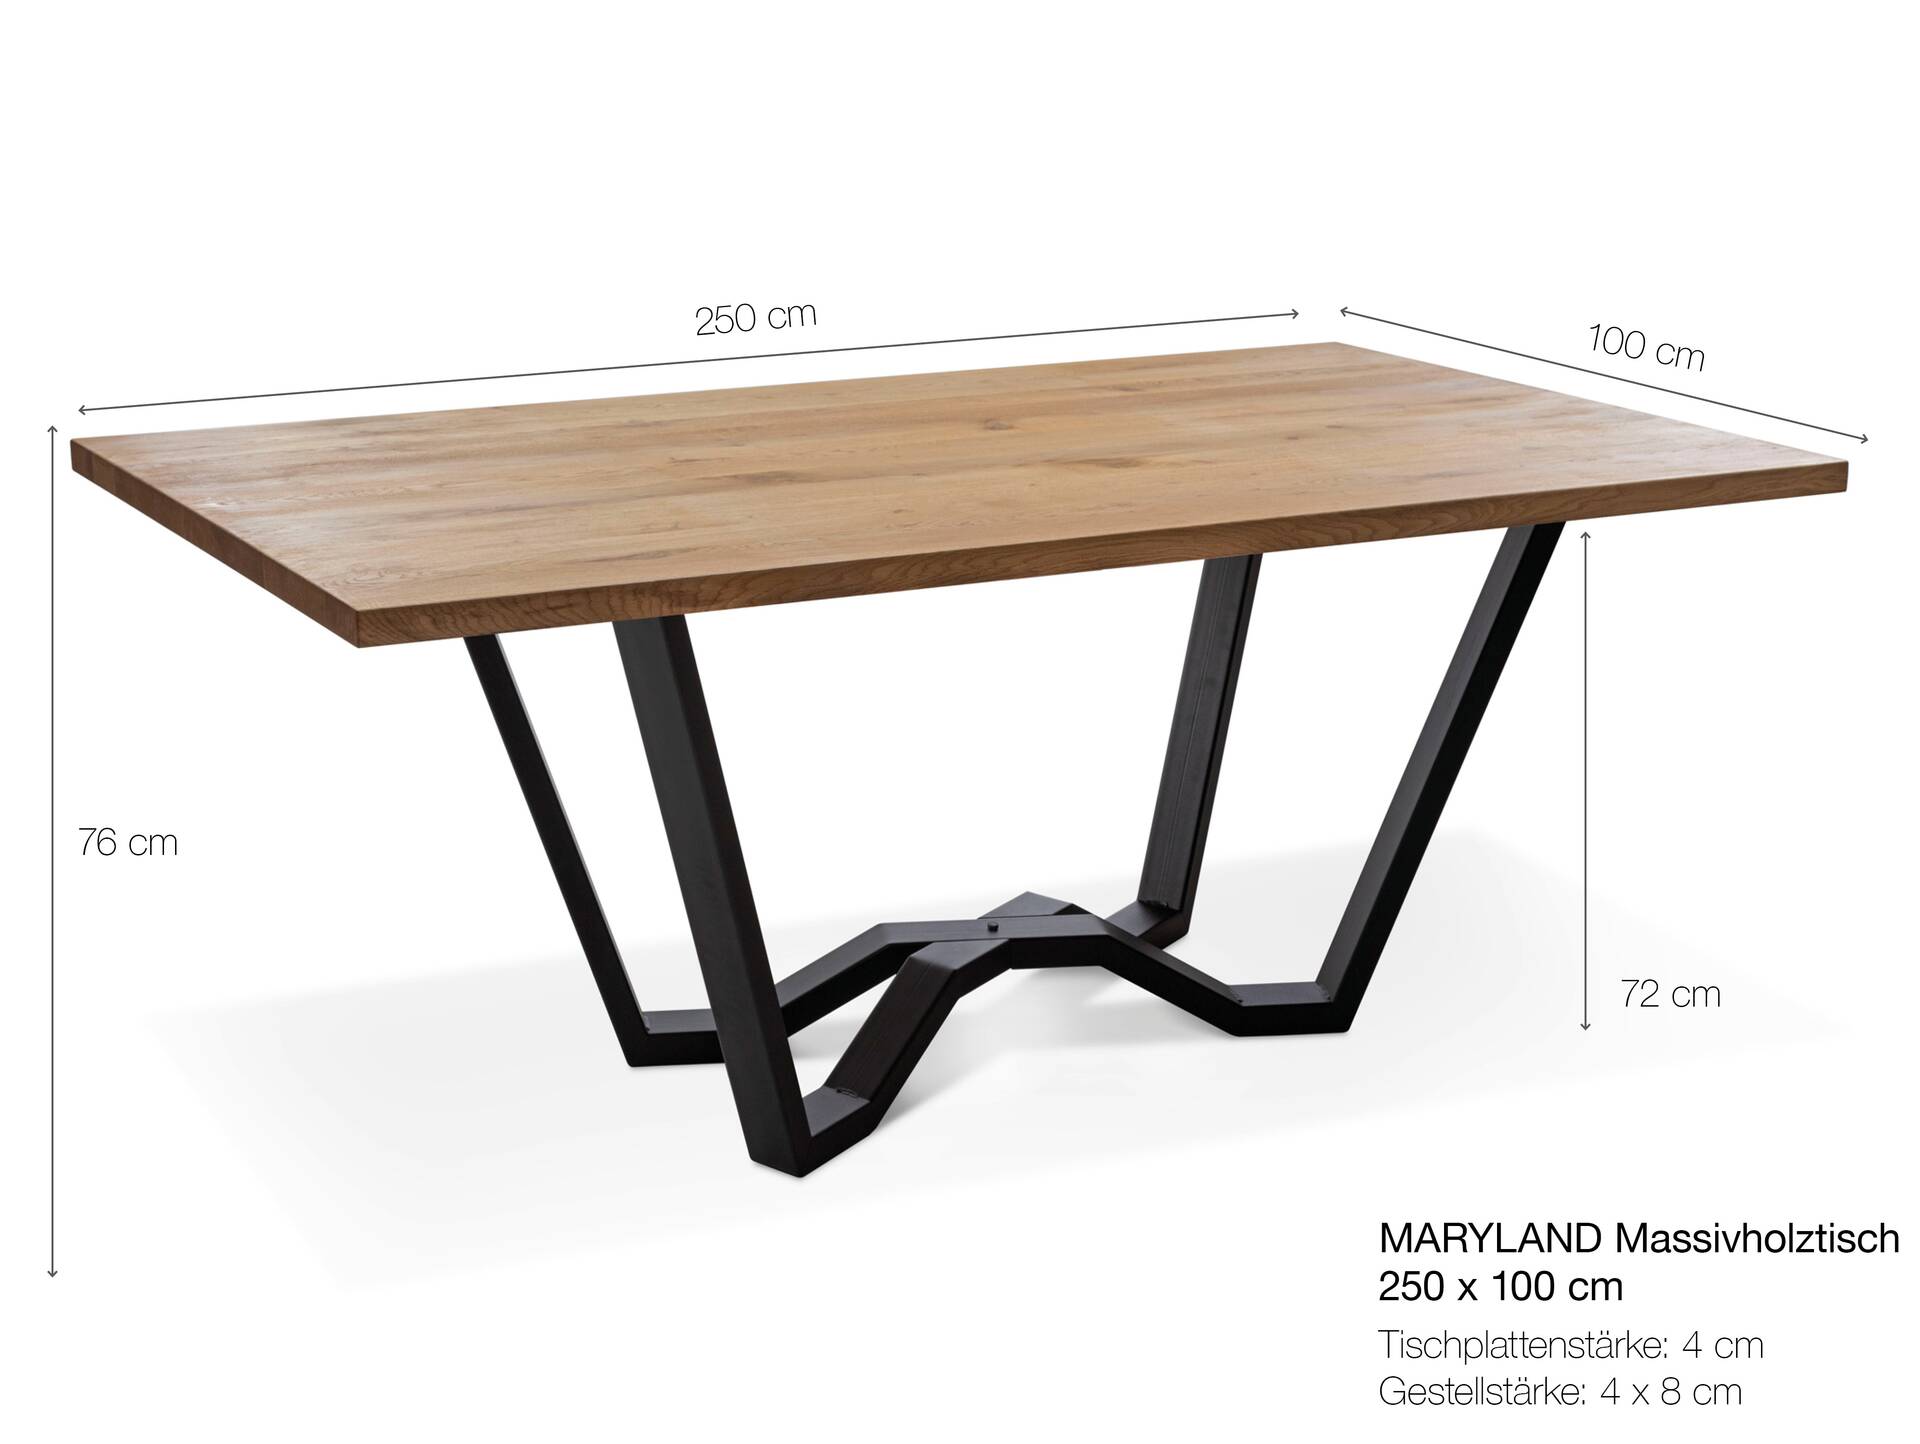 MARYLAND II Massivholztisch mit Baumkante, Material Eiche/Metallgestell SPINNE 250 x 100 cm